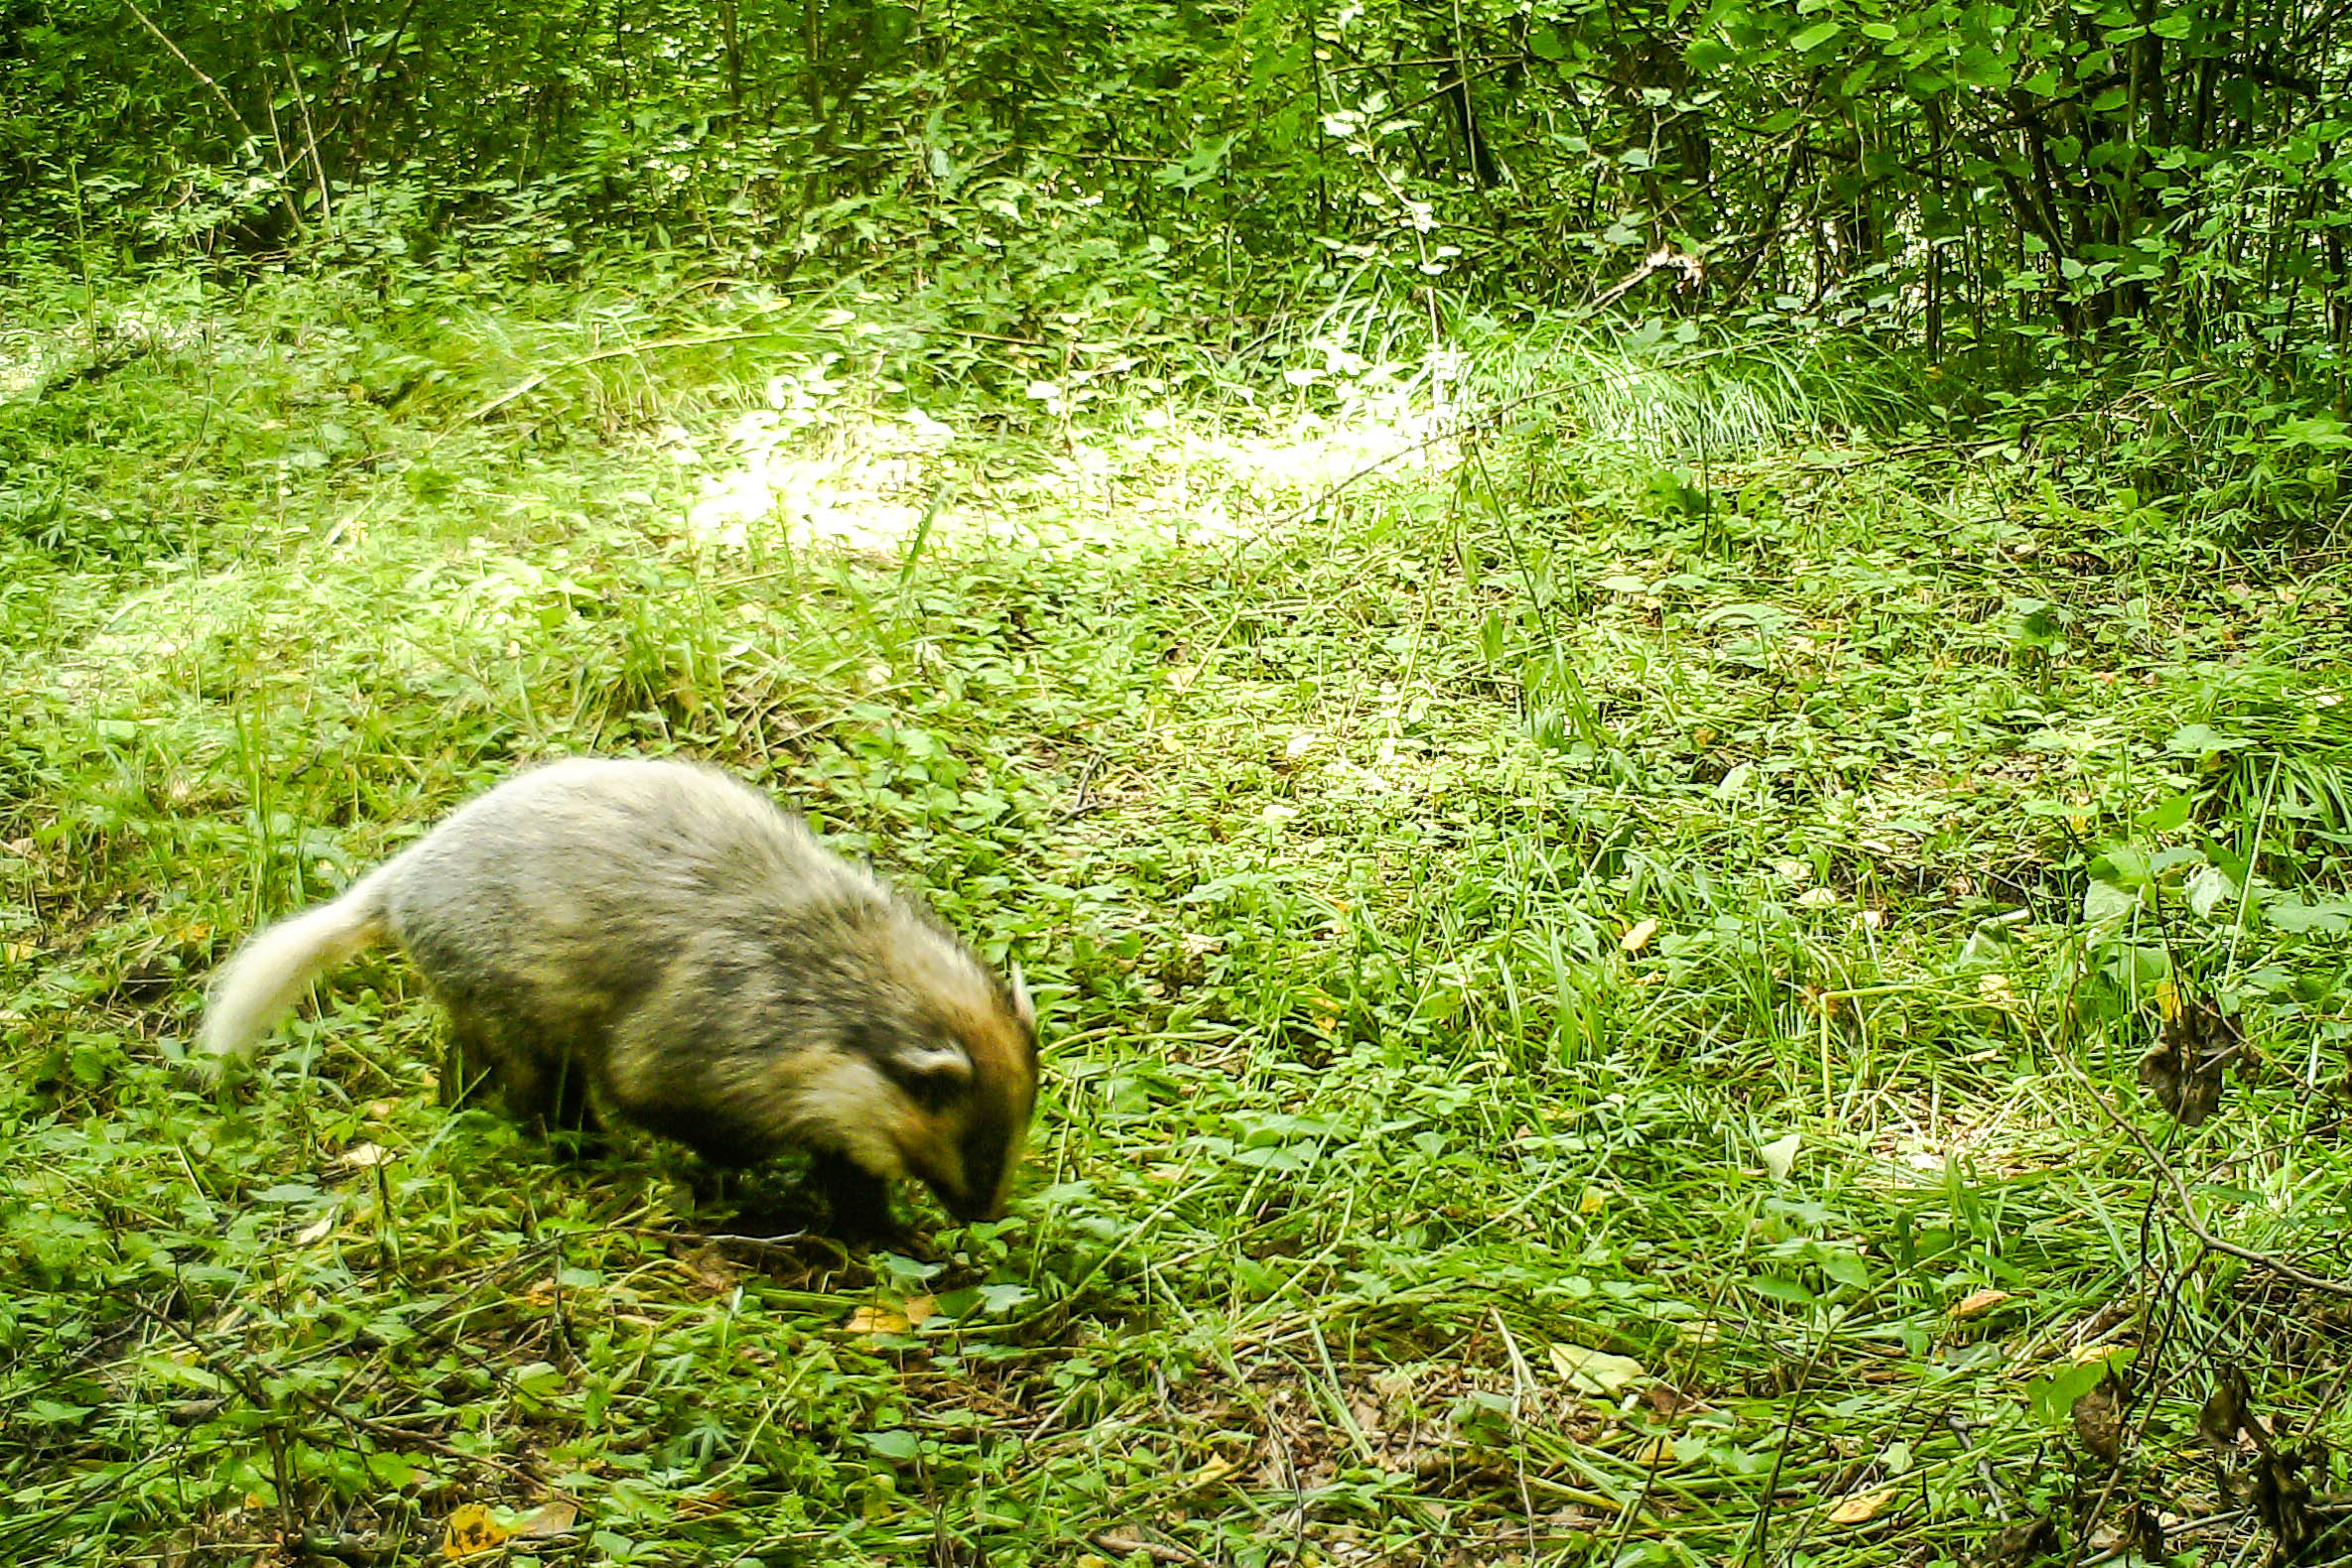 近几年六盘山林业局安置的红外线摄像机拍到的猪獾.jpg